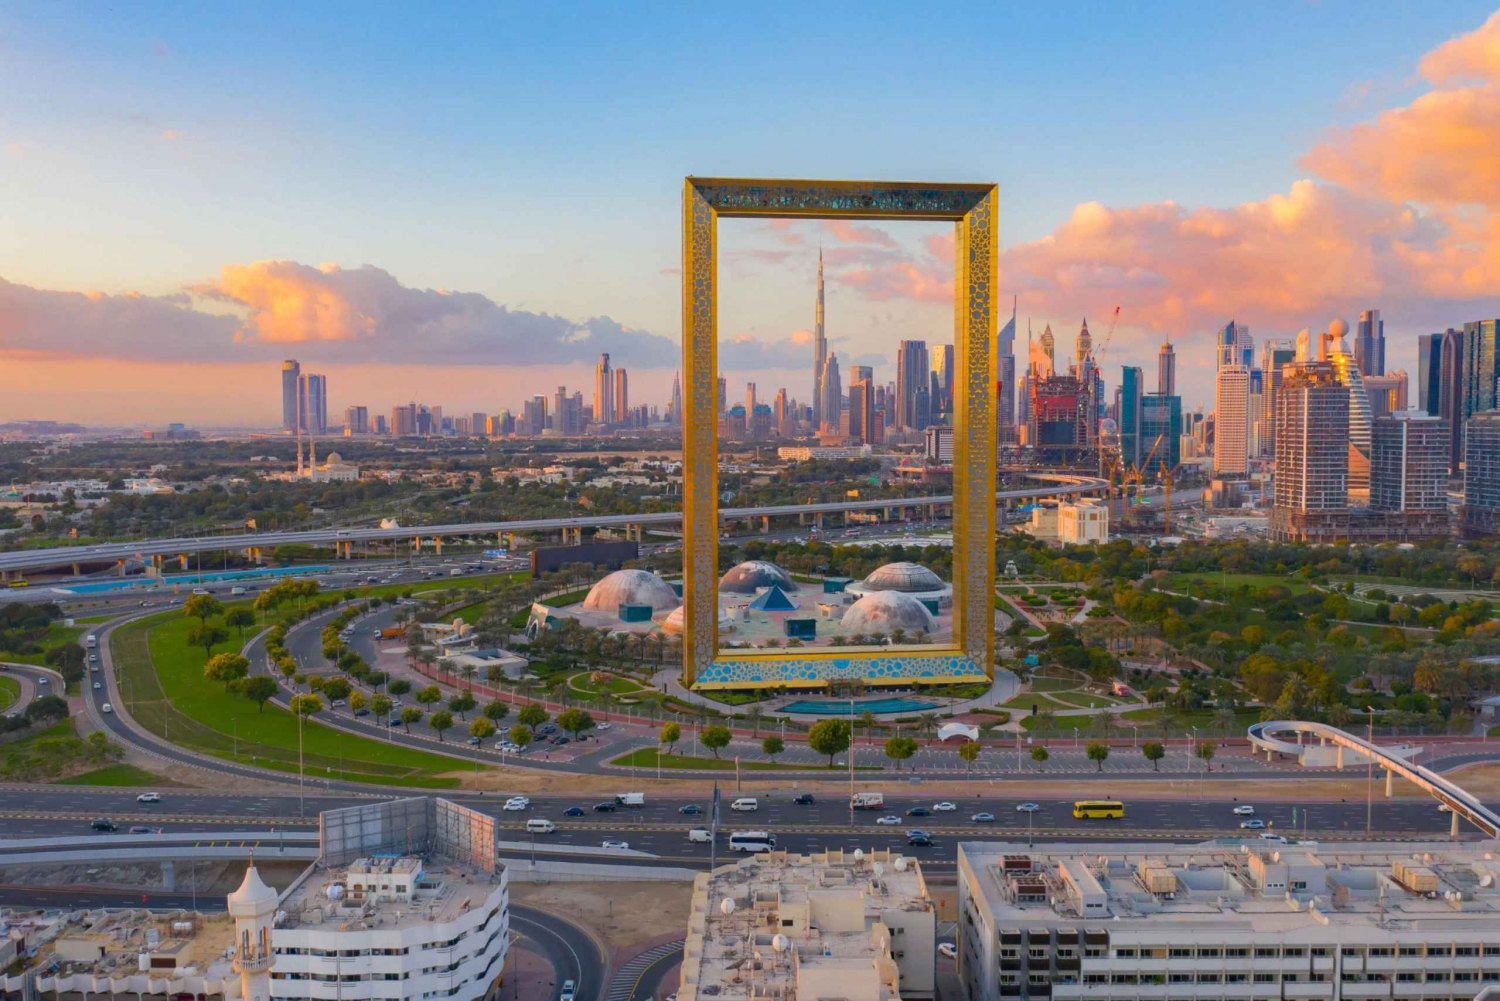 Gamla Dubai: Souker, museer och gatumat med transfer till hotellet